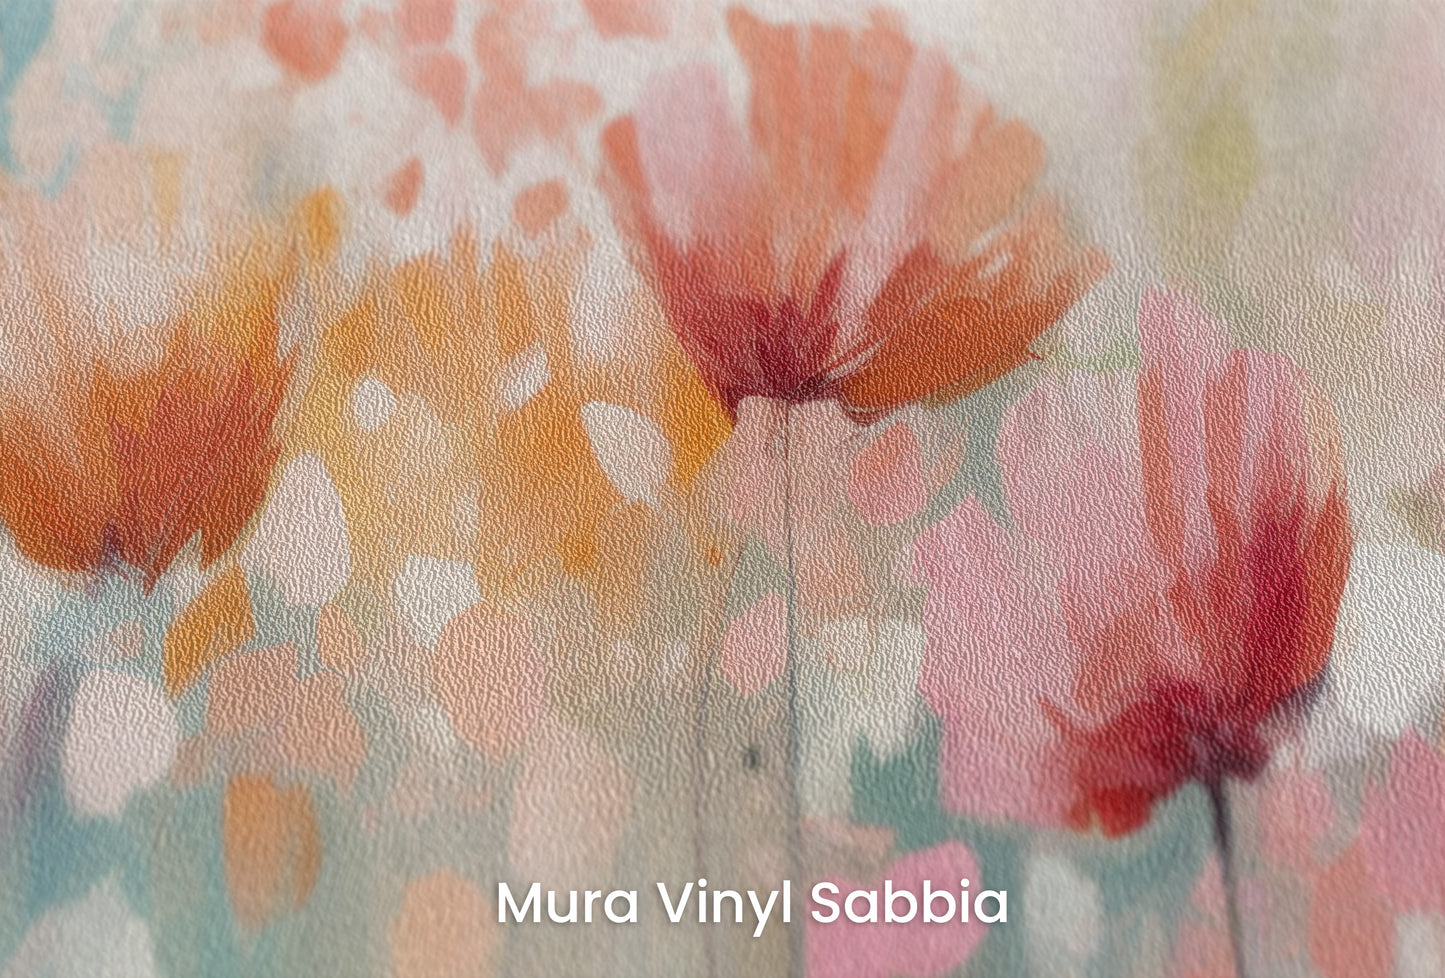 Zbliżenie na artystyczną fototapetę o nazwie Blossom Rain na podłożu Mura Vinyl Sabbia struktura grubego ziarna piasku.